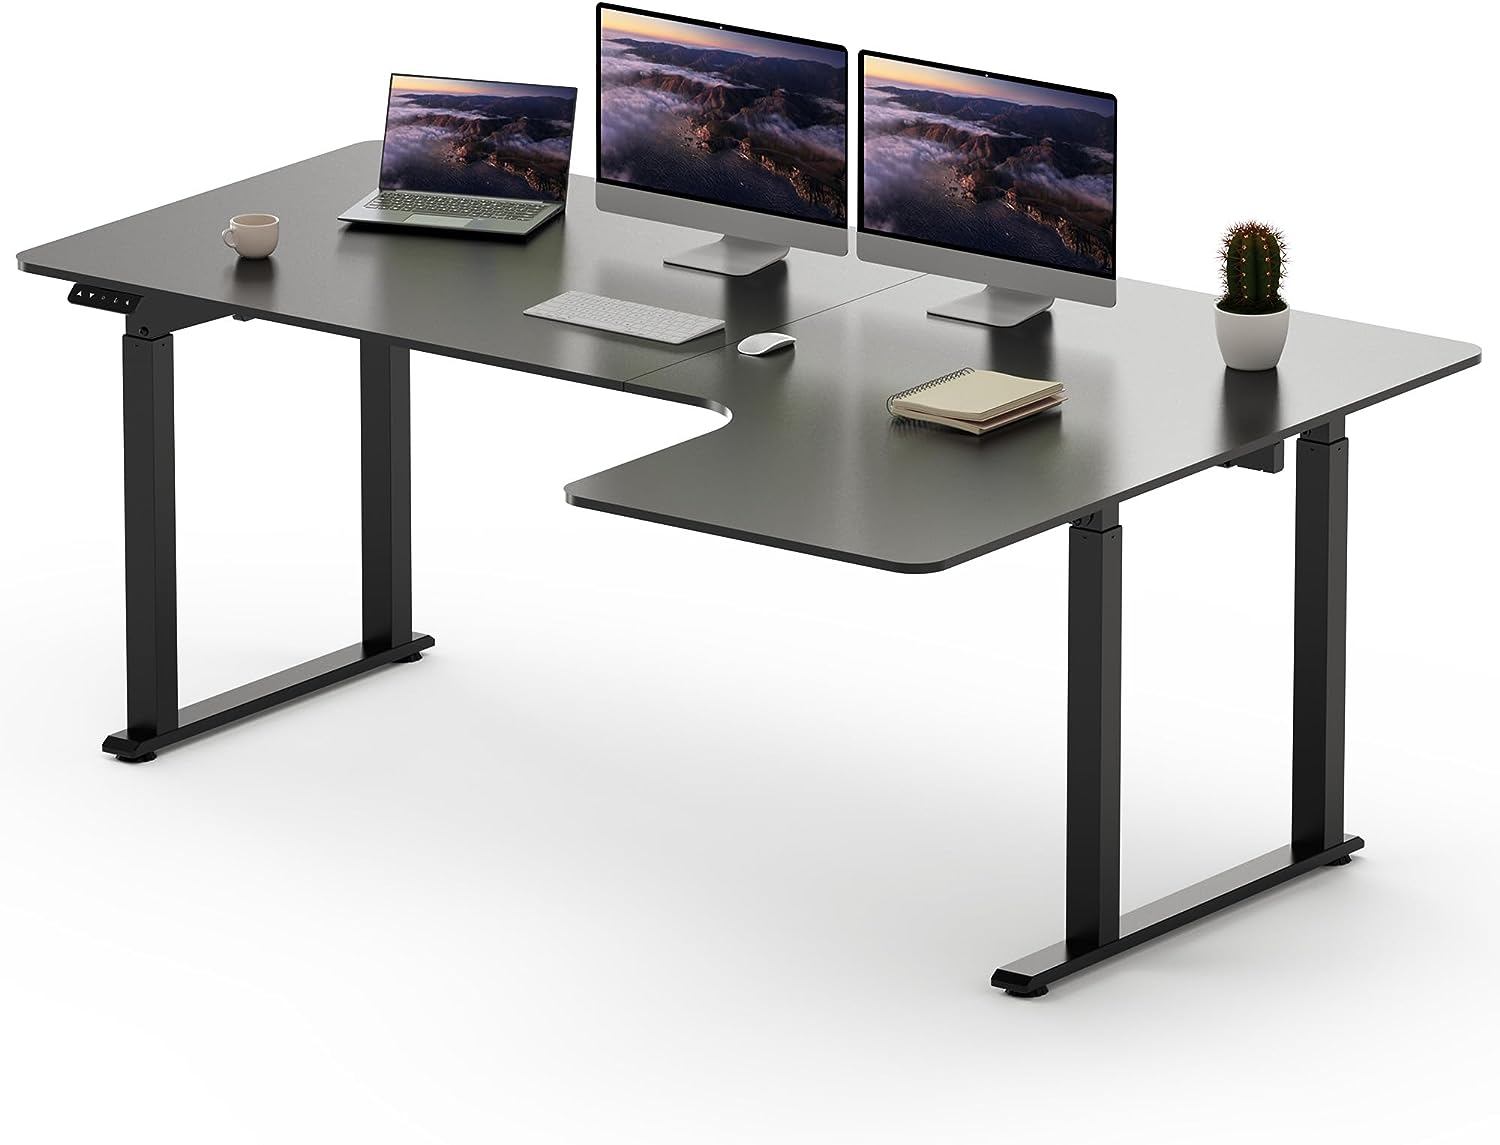 Schreibtisch TOM1 höhenverstellbar elektrisch ergonomisch lichtgrau schwarz  110cm